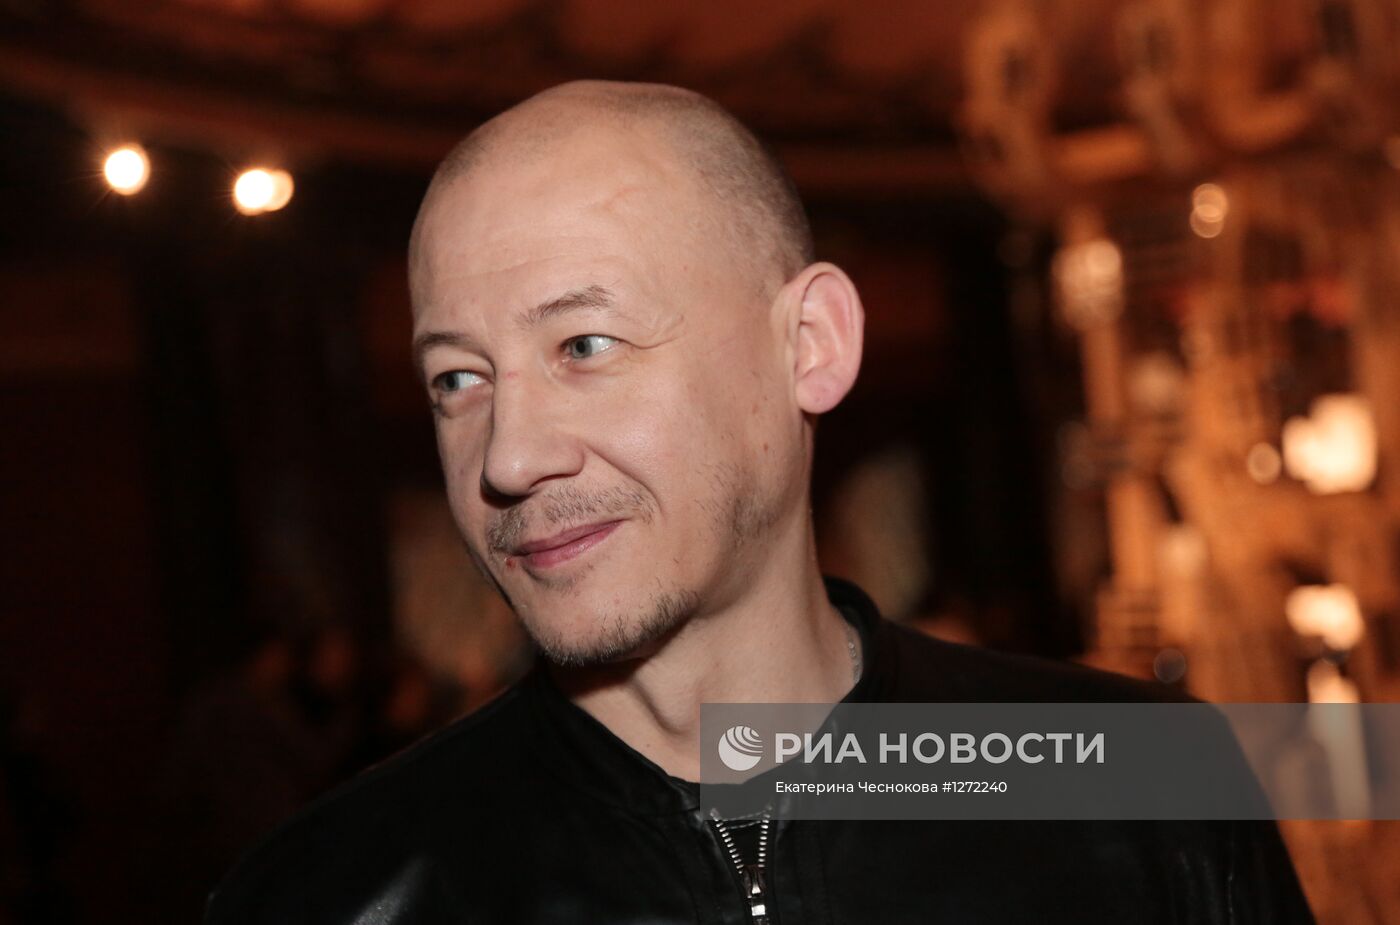 Выставка номинантов Премии Кандинского 2012 открылась в Москве